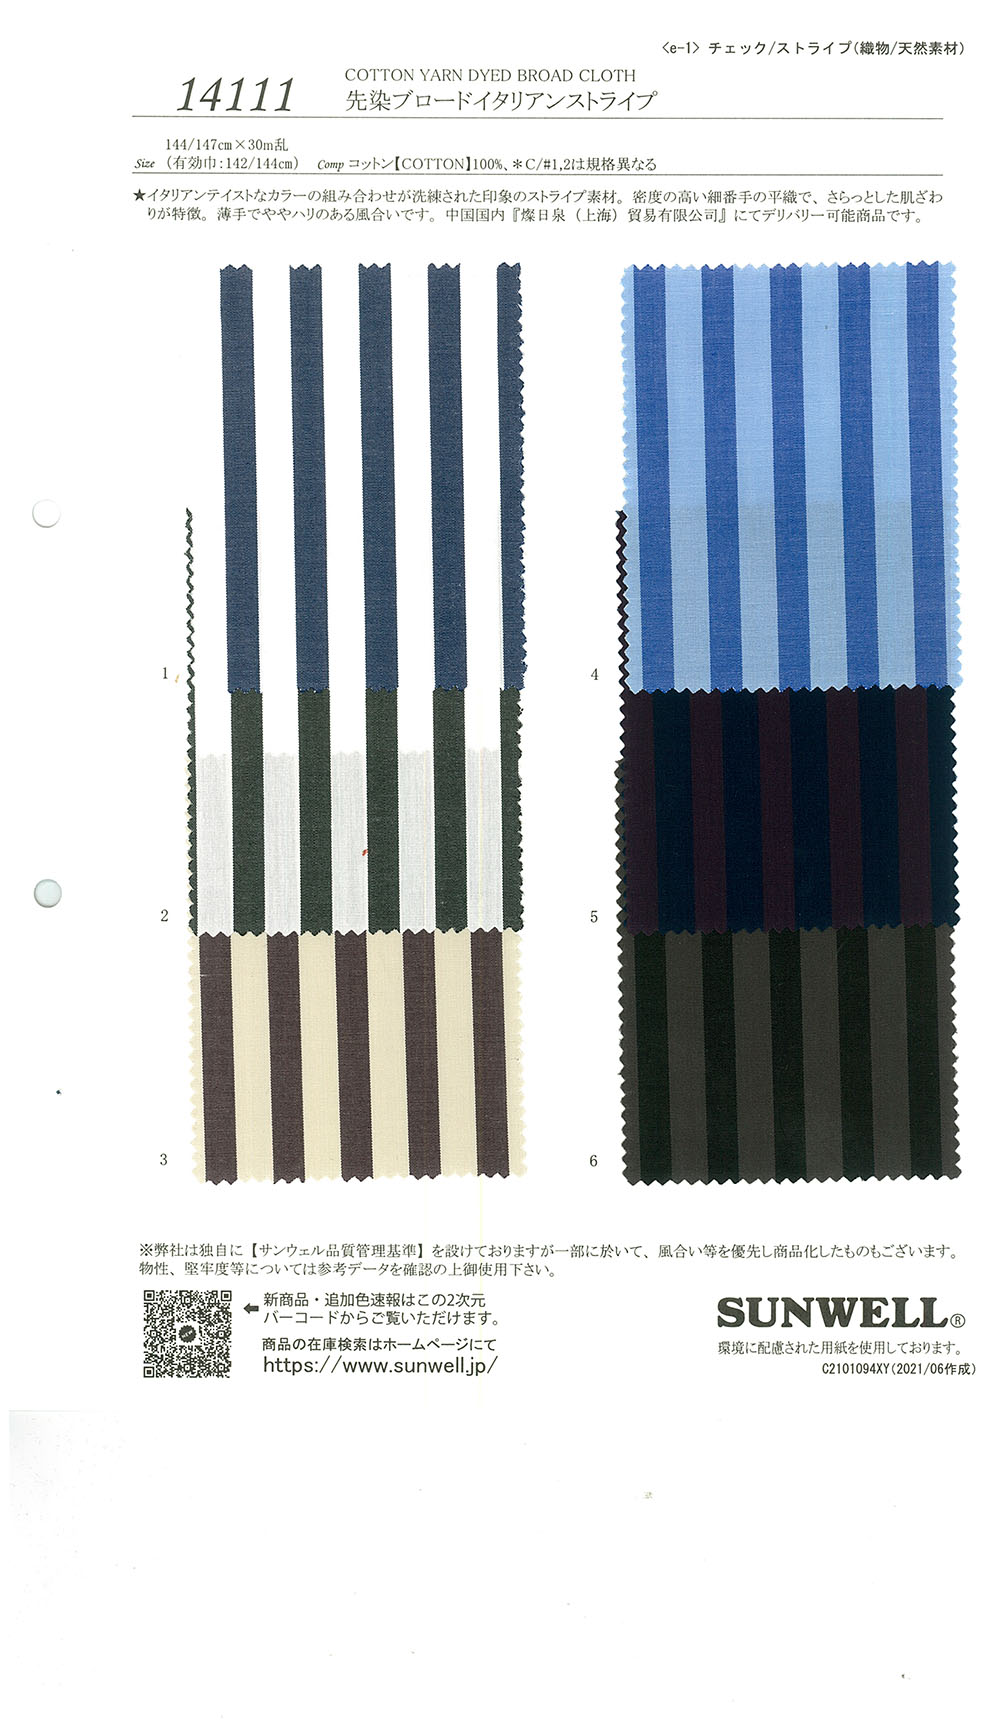 14111 色织意大利平纹布条纹[面料] SUNWELL